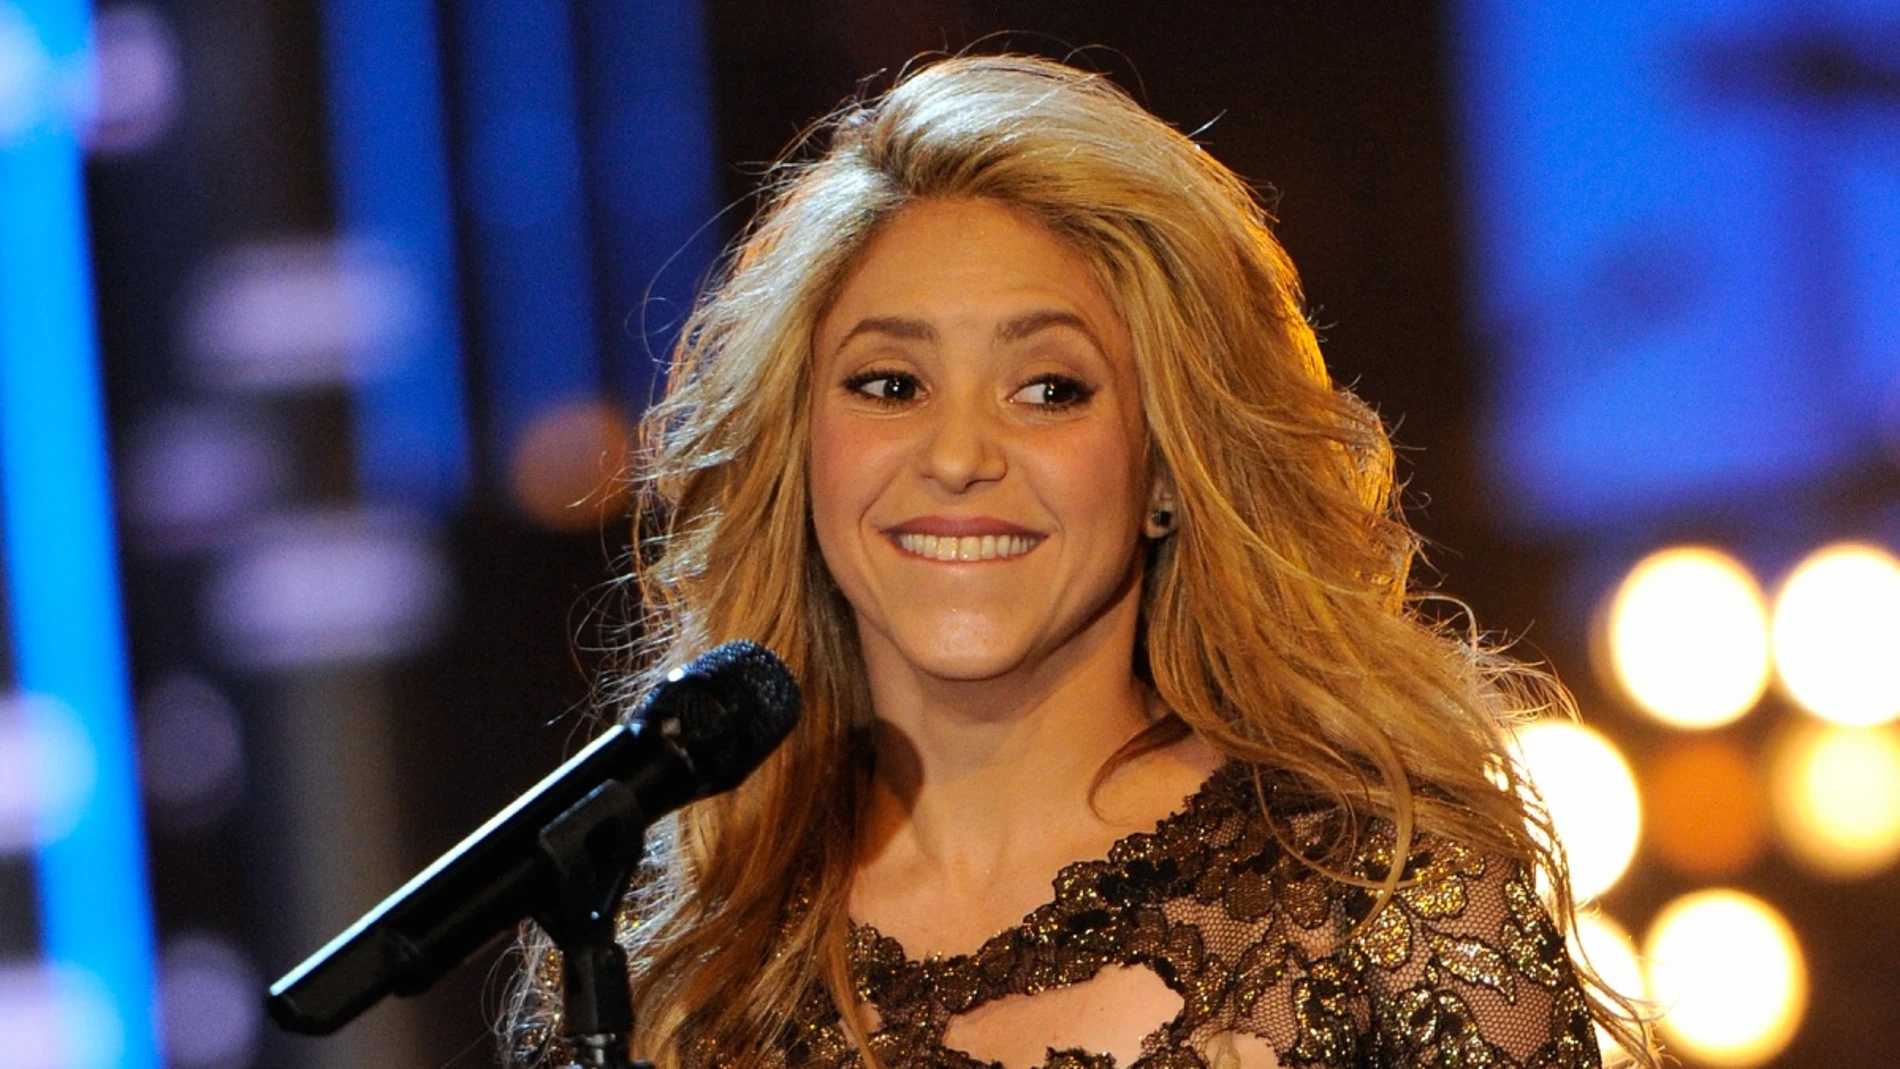 La Fiscalía de Barcelona pide más de 8 años de cárcel para Shakira por fraude fiscal